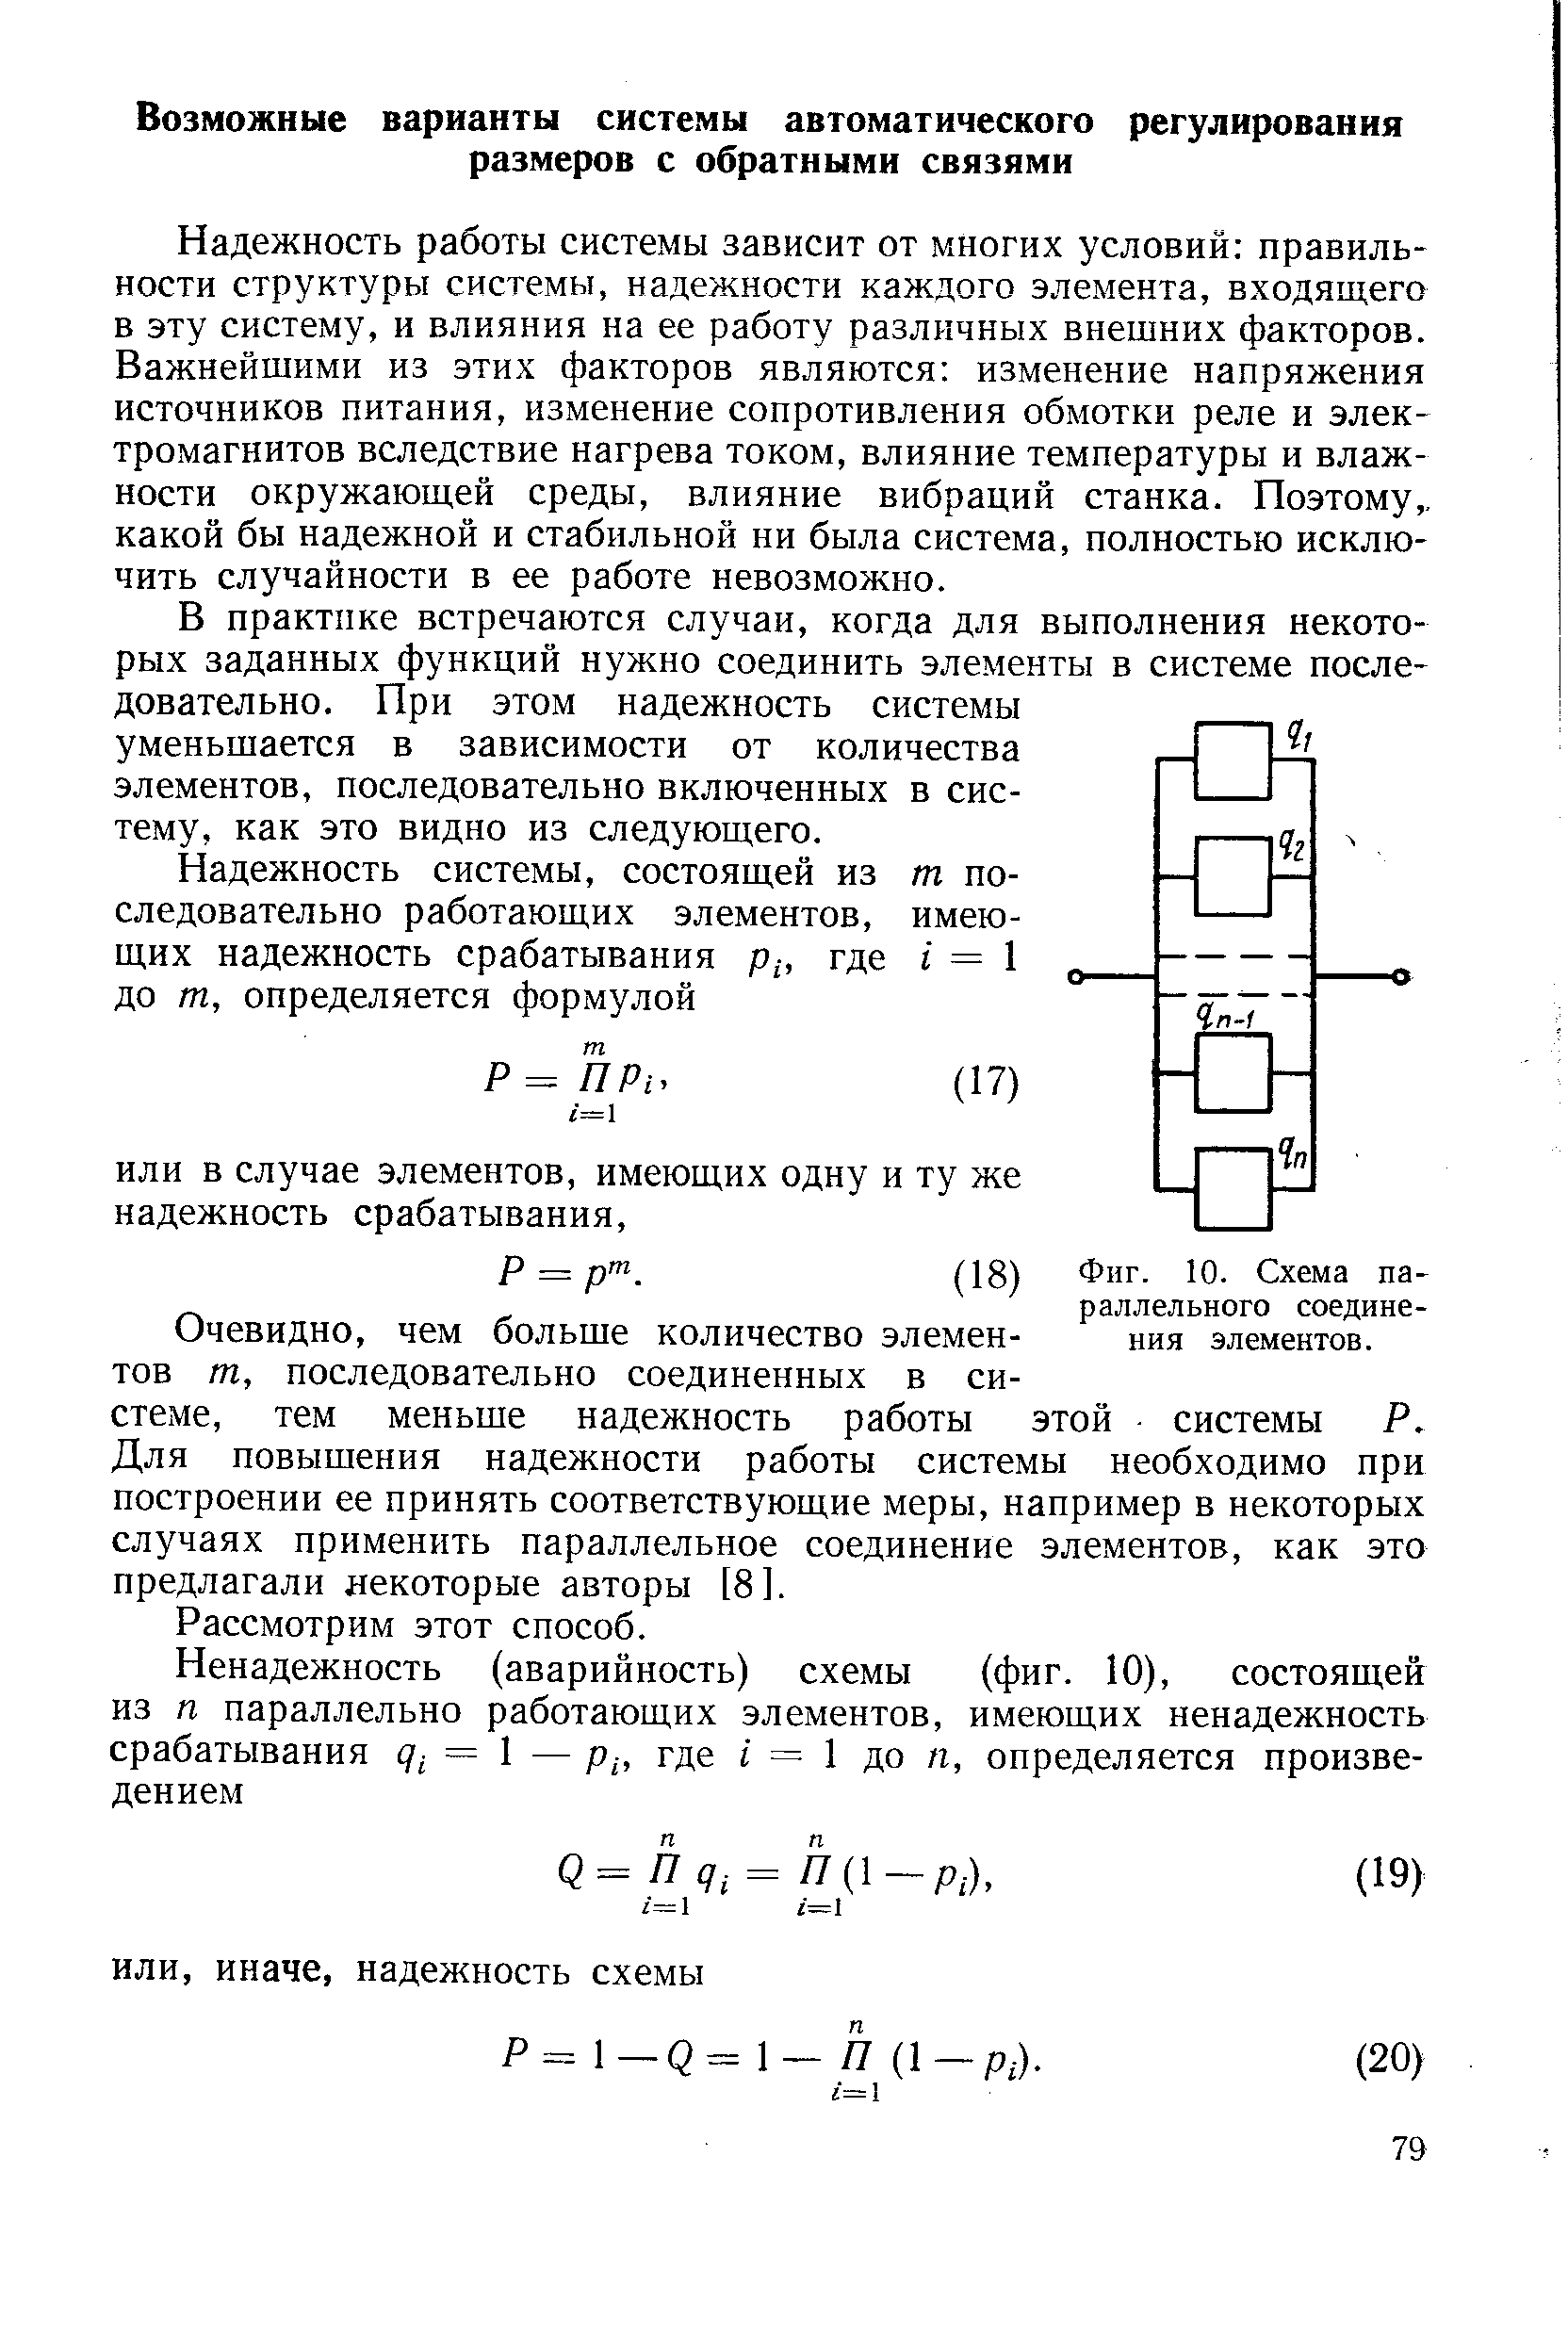 Фиг. 10. Схема параллельного соединения элементов.
